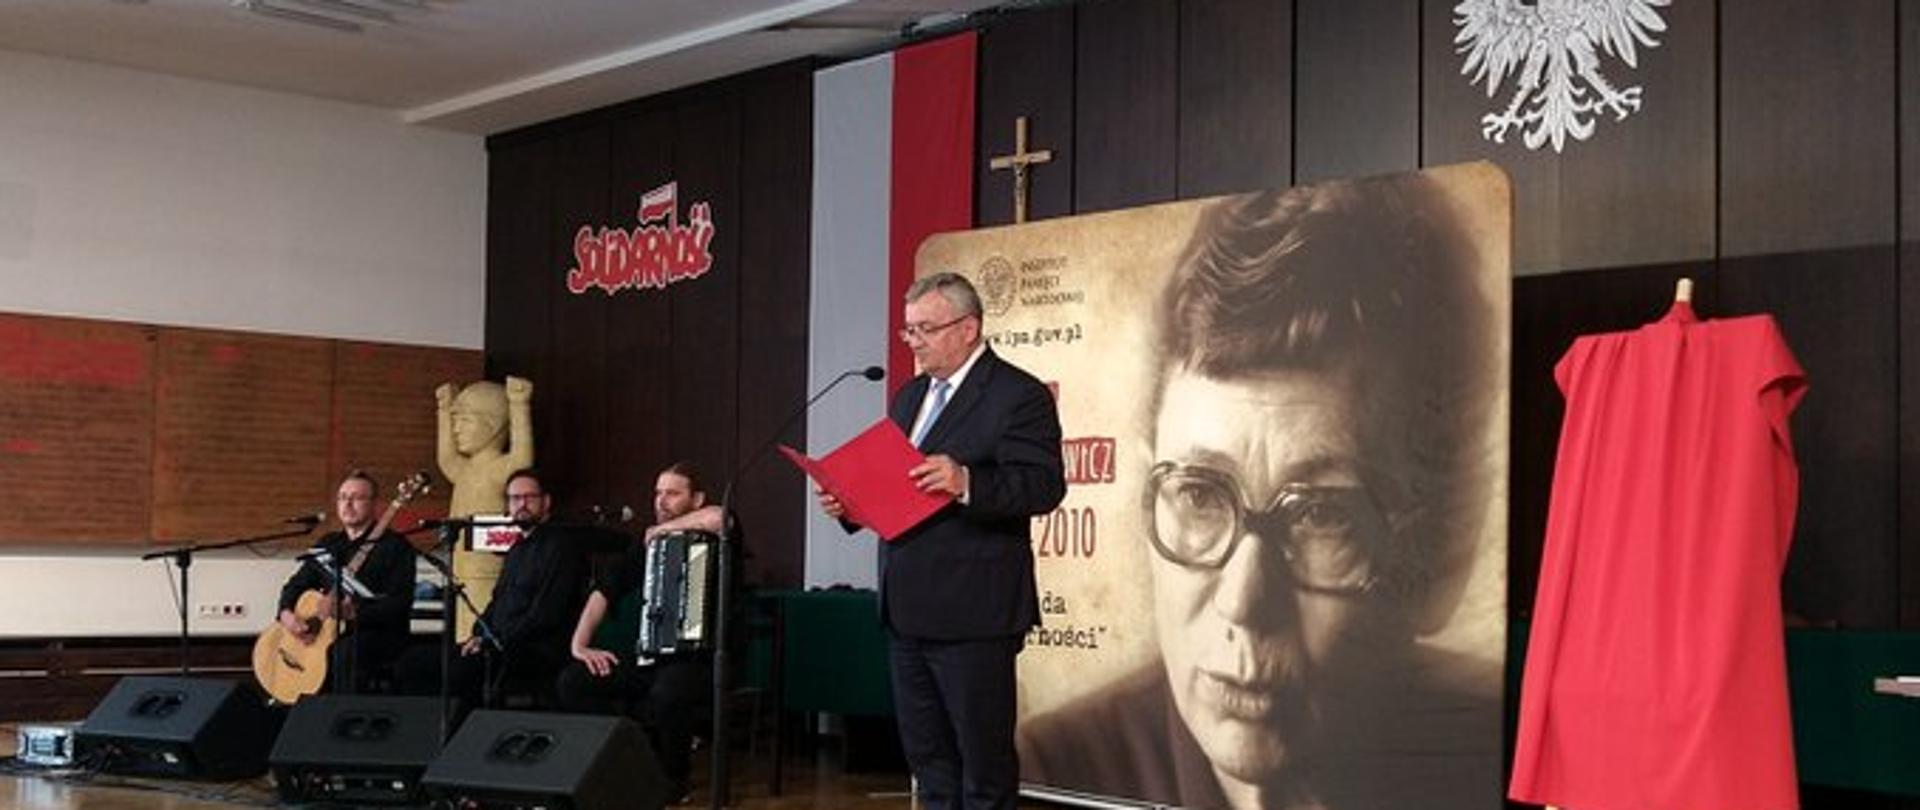 Minister infrastruktury wziął udział w prezentacji znaczka pocztowego z portretem Anny Walentynowicz